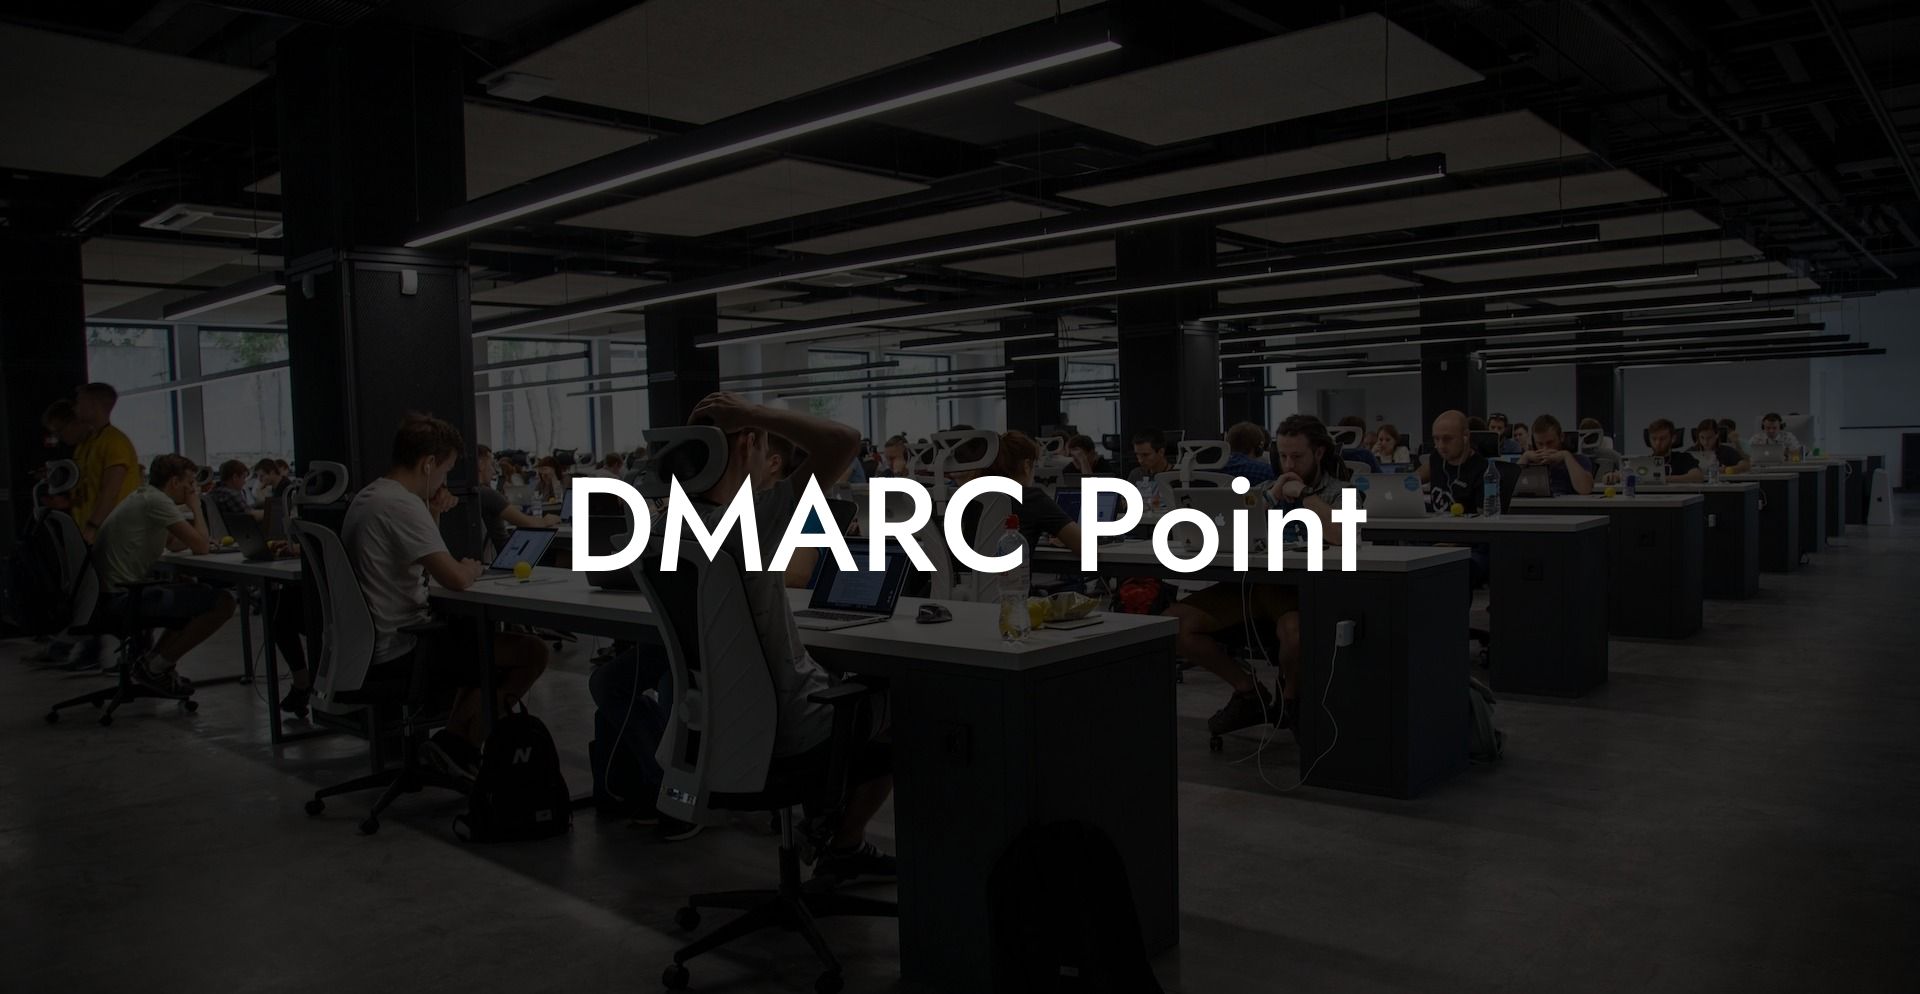 DMARC Point